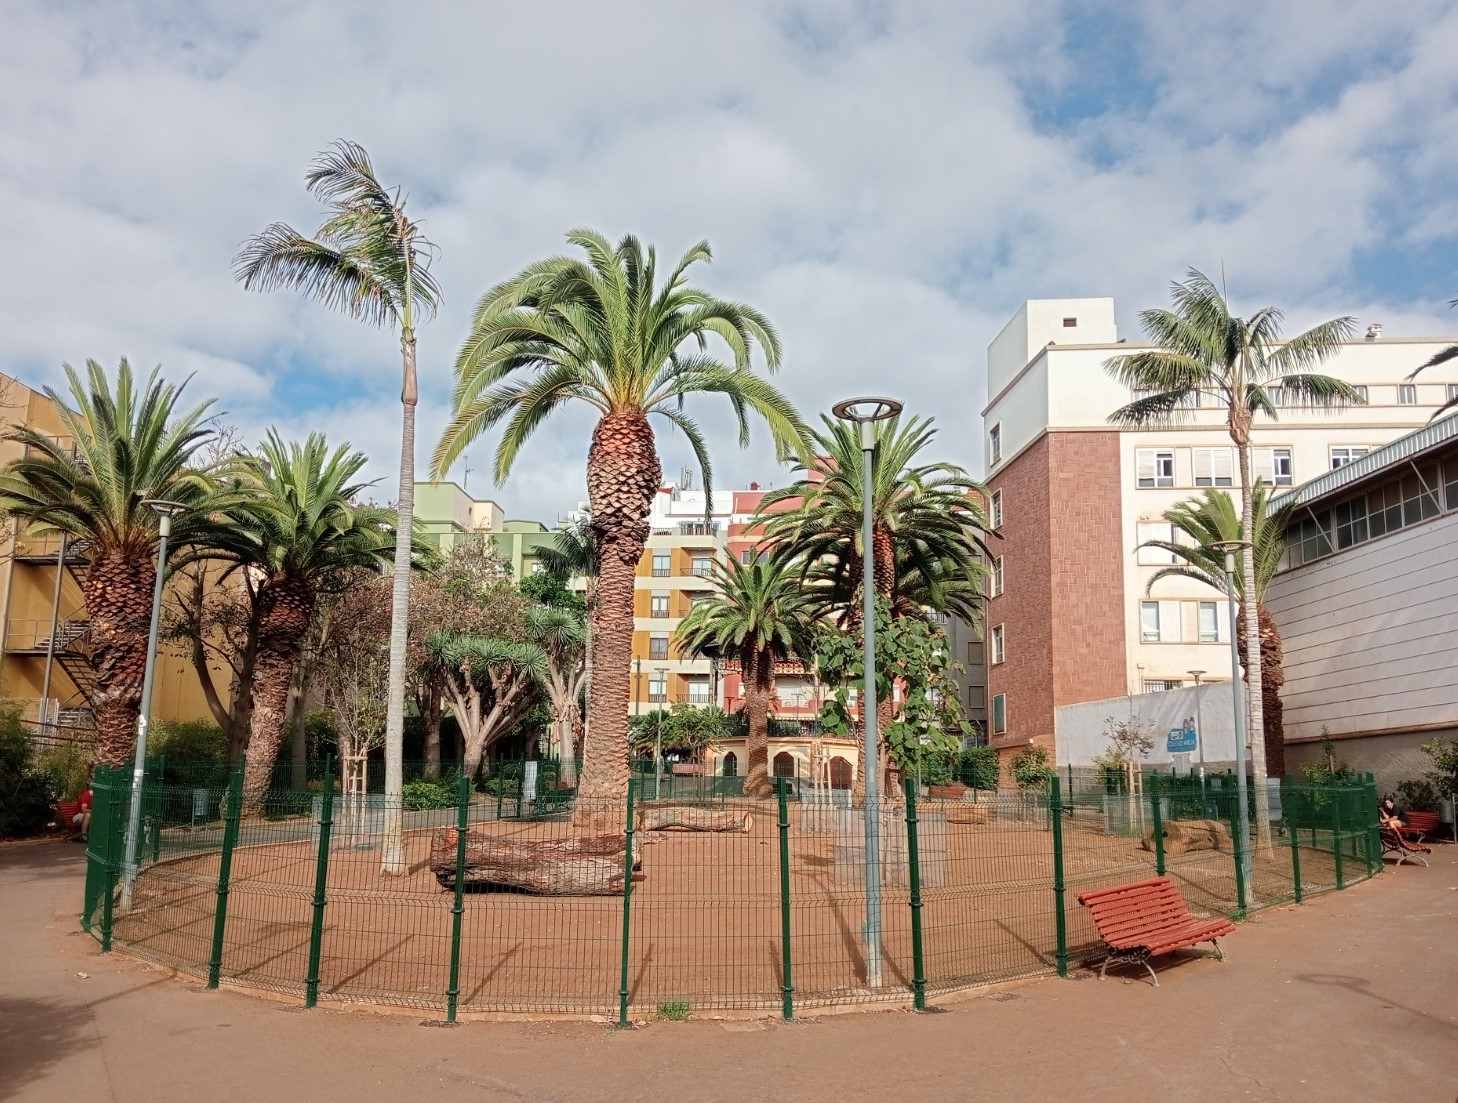 Parque para perros / CanariasNoticias.es 